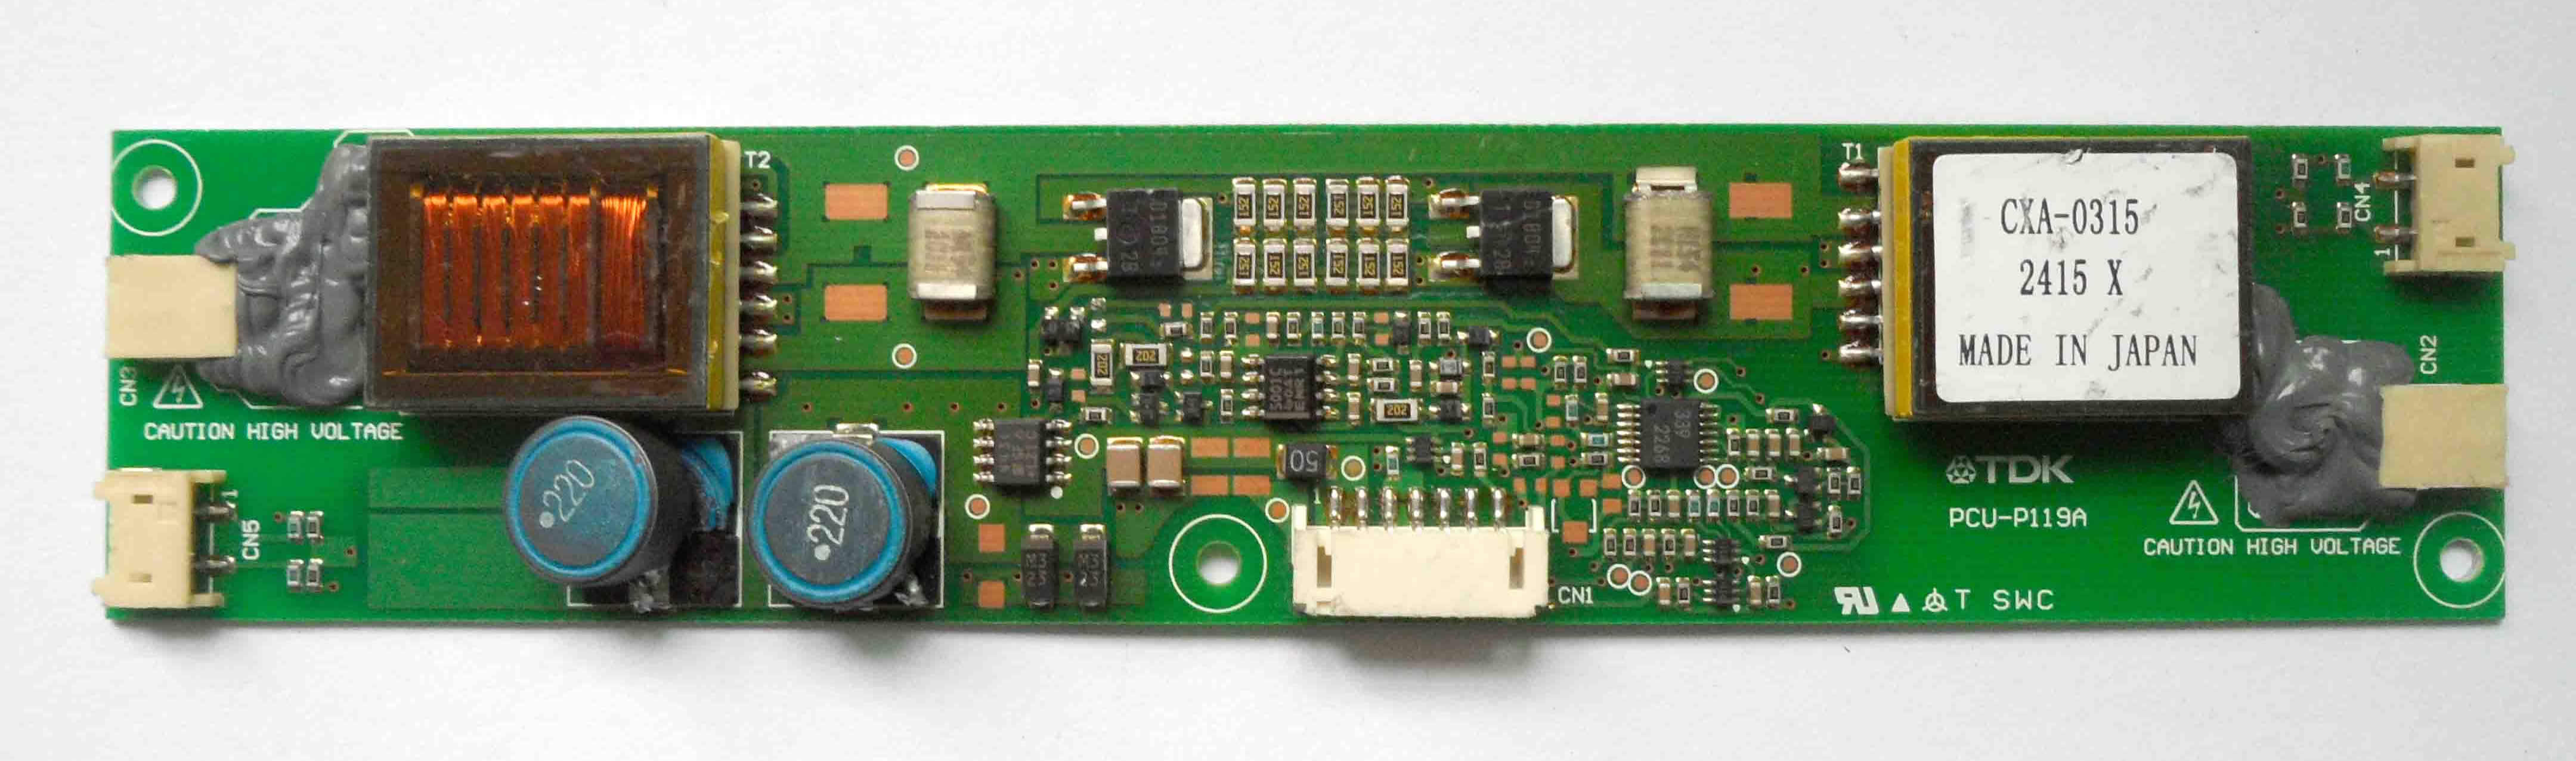 CXA-0315 PCU-P119A TDK inverter board